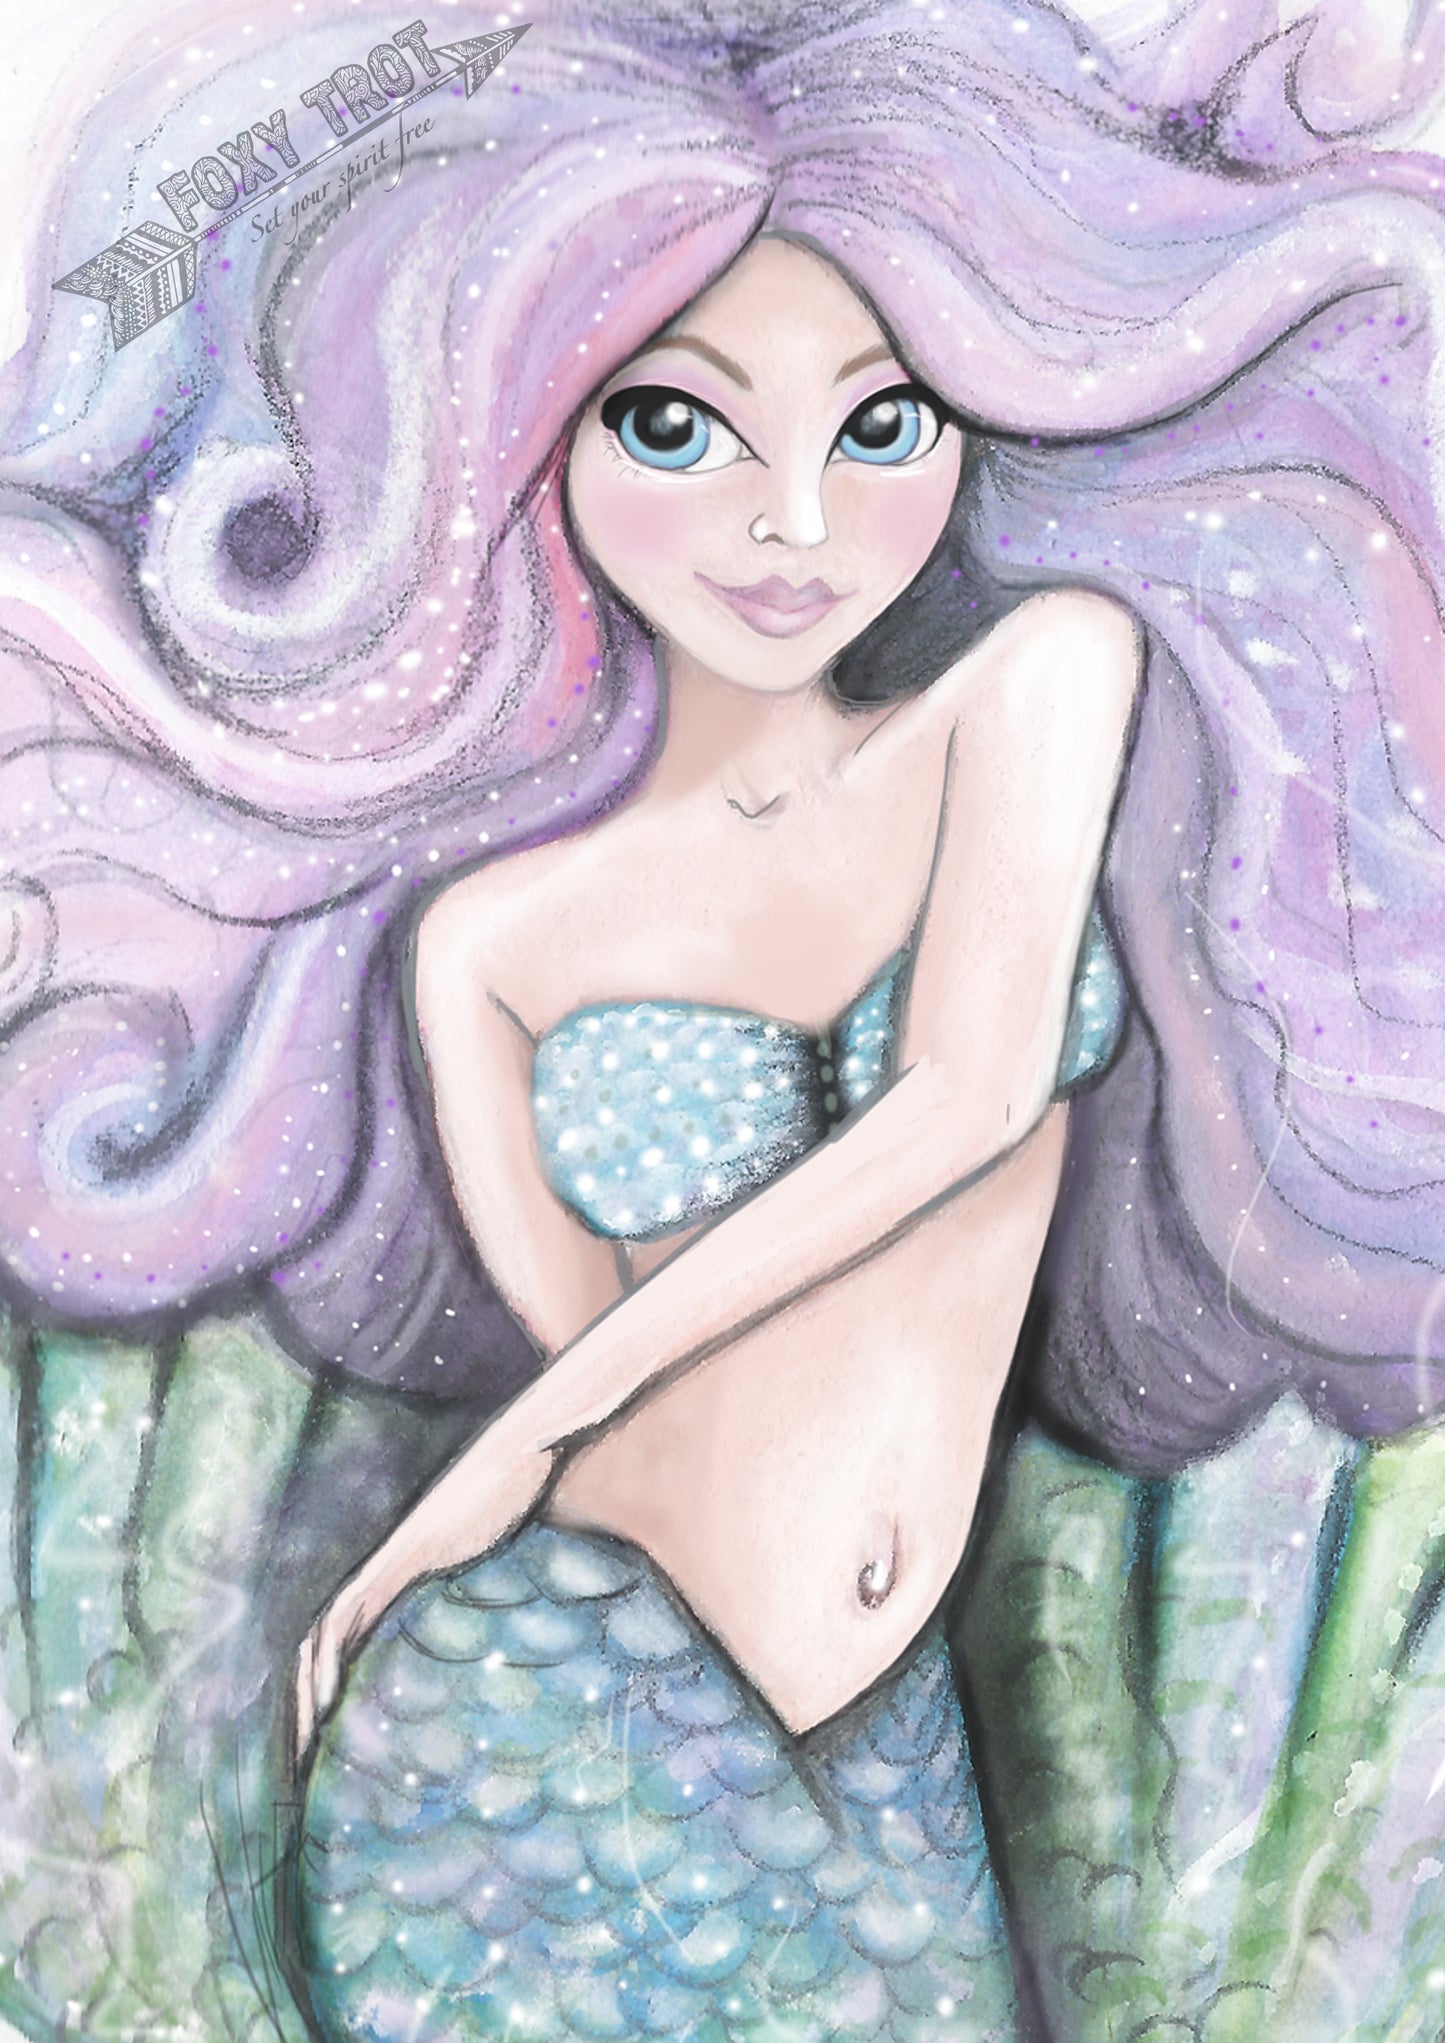 Evie The Mermaid